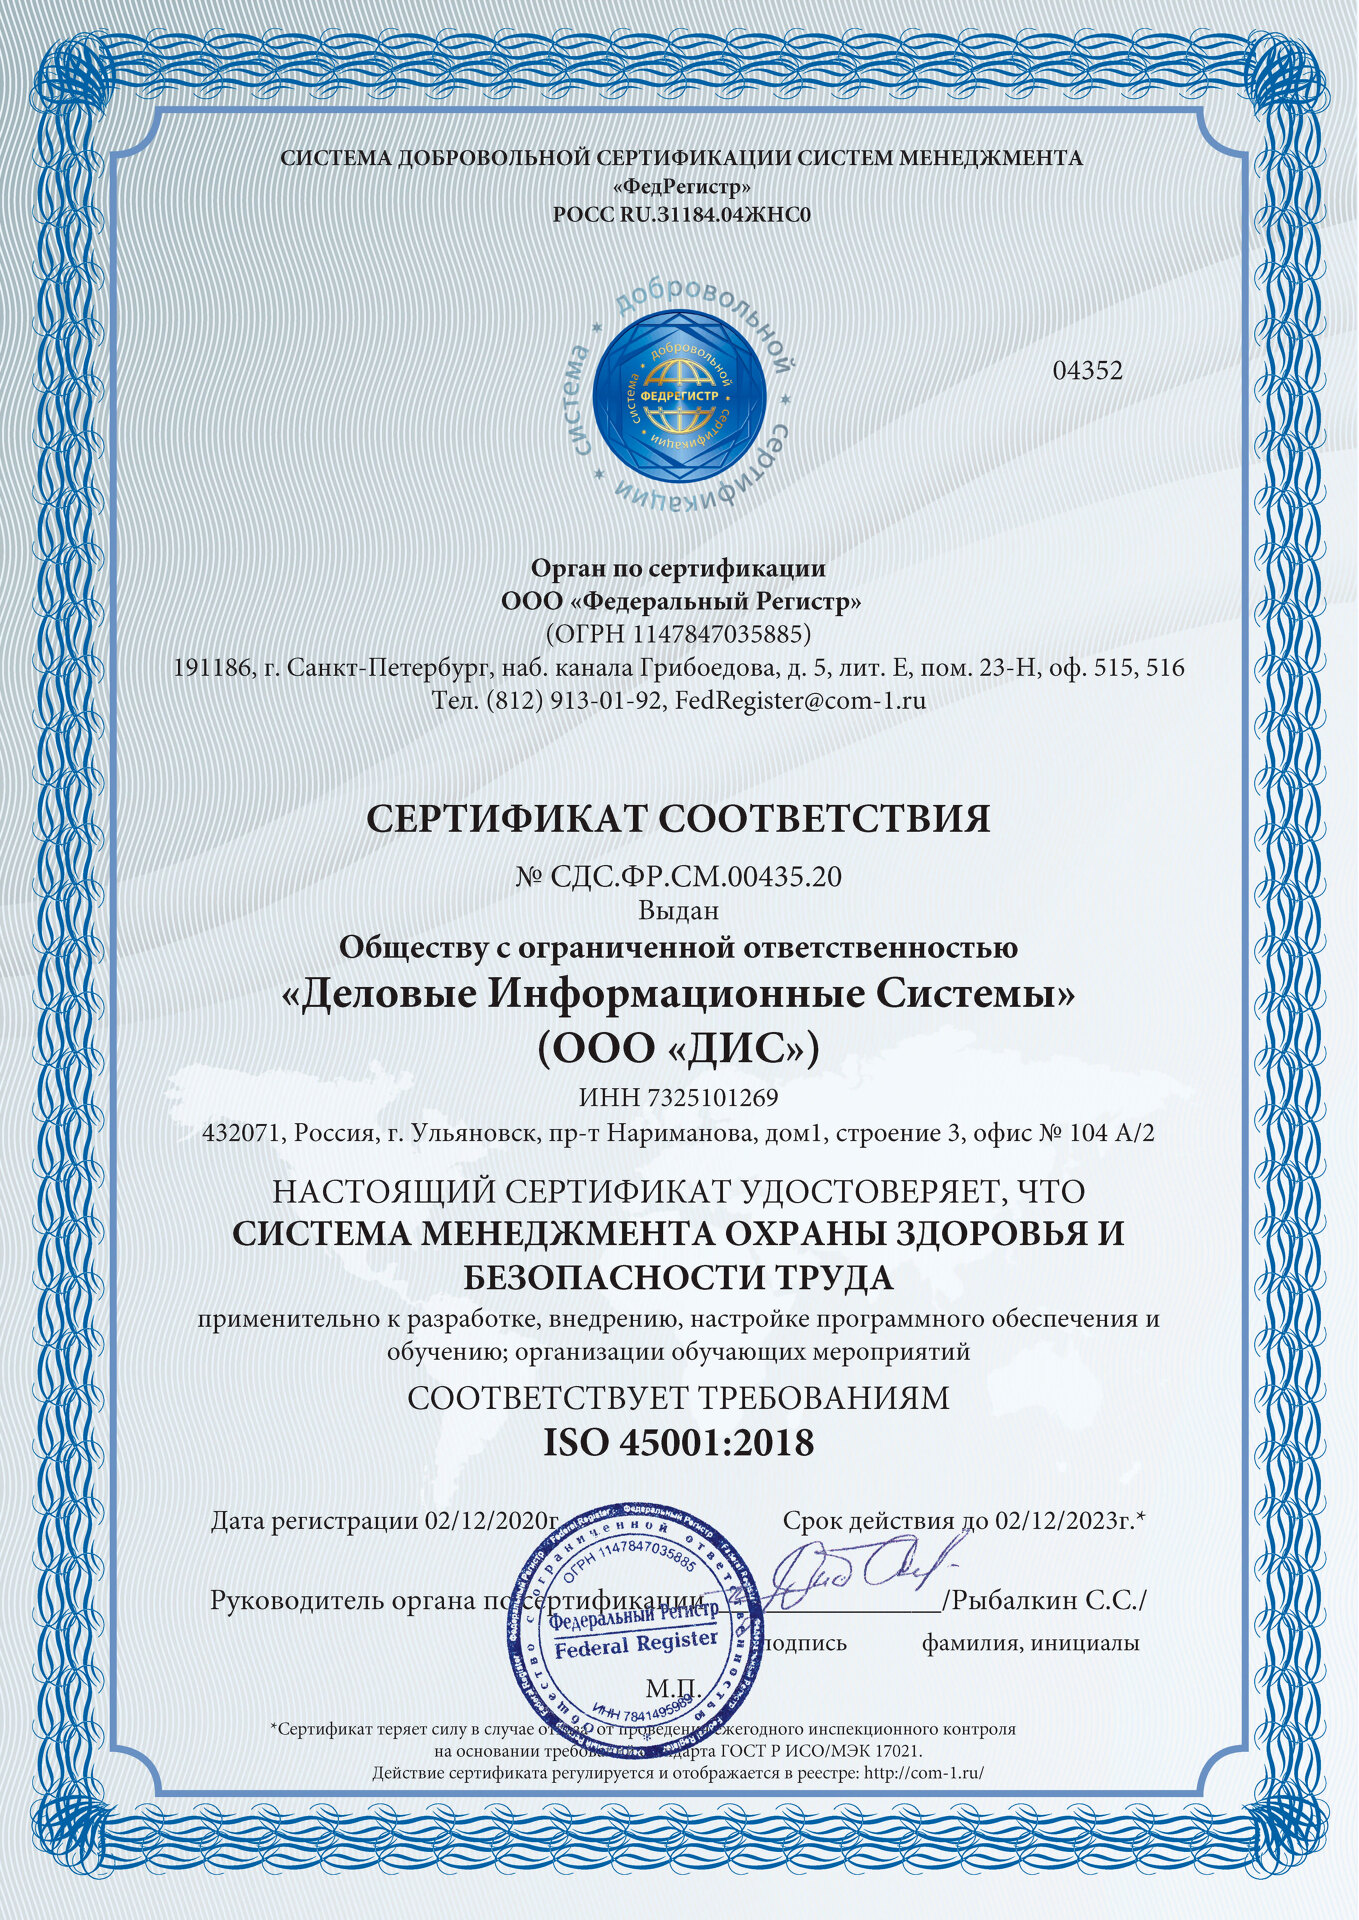 Сертификат соответствия требованиям ISO 45001:2018